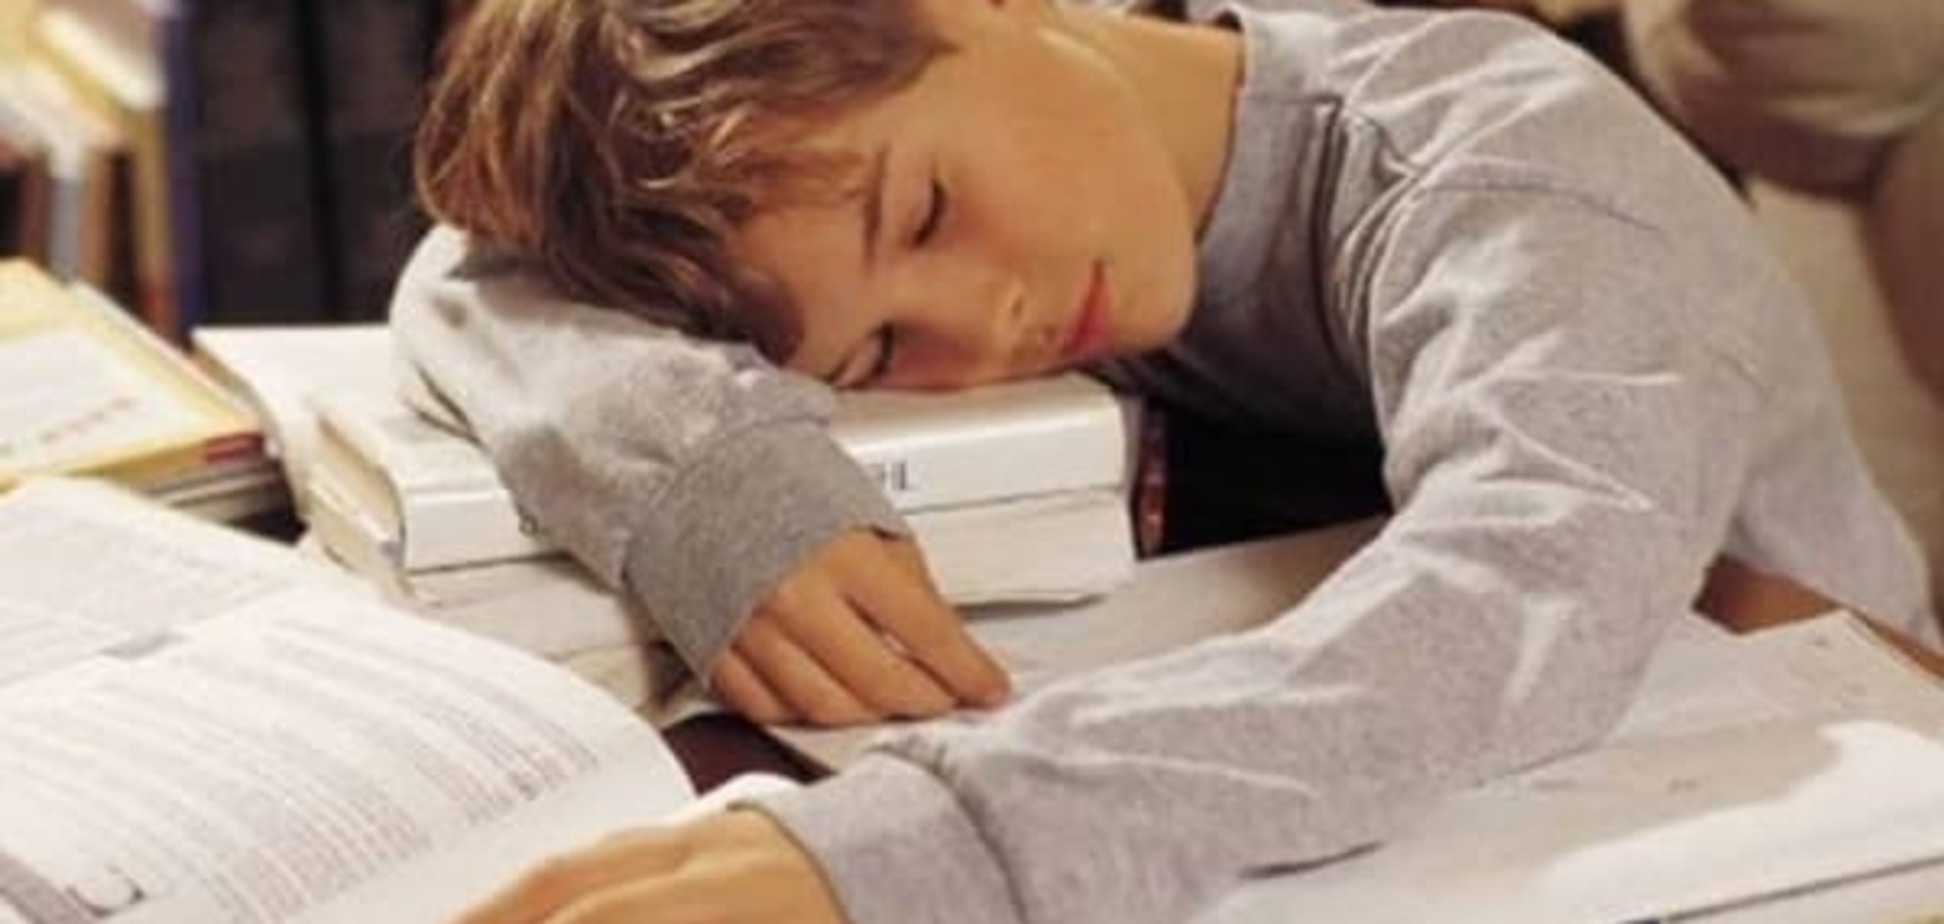 Синдром хронической усталости - основная проблема у детей